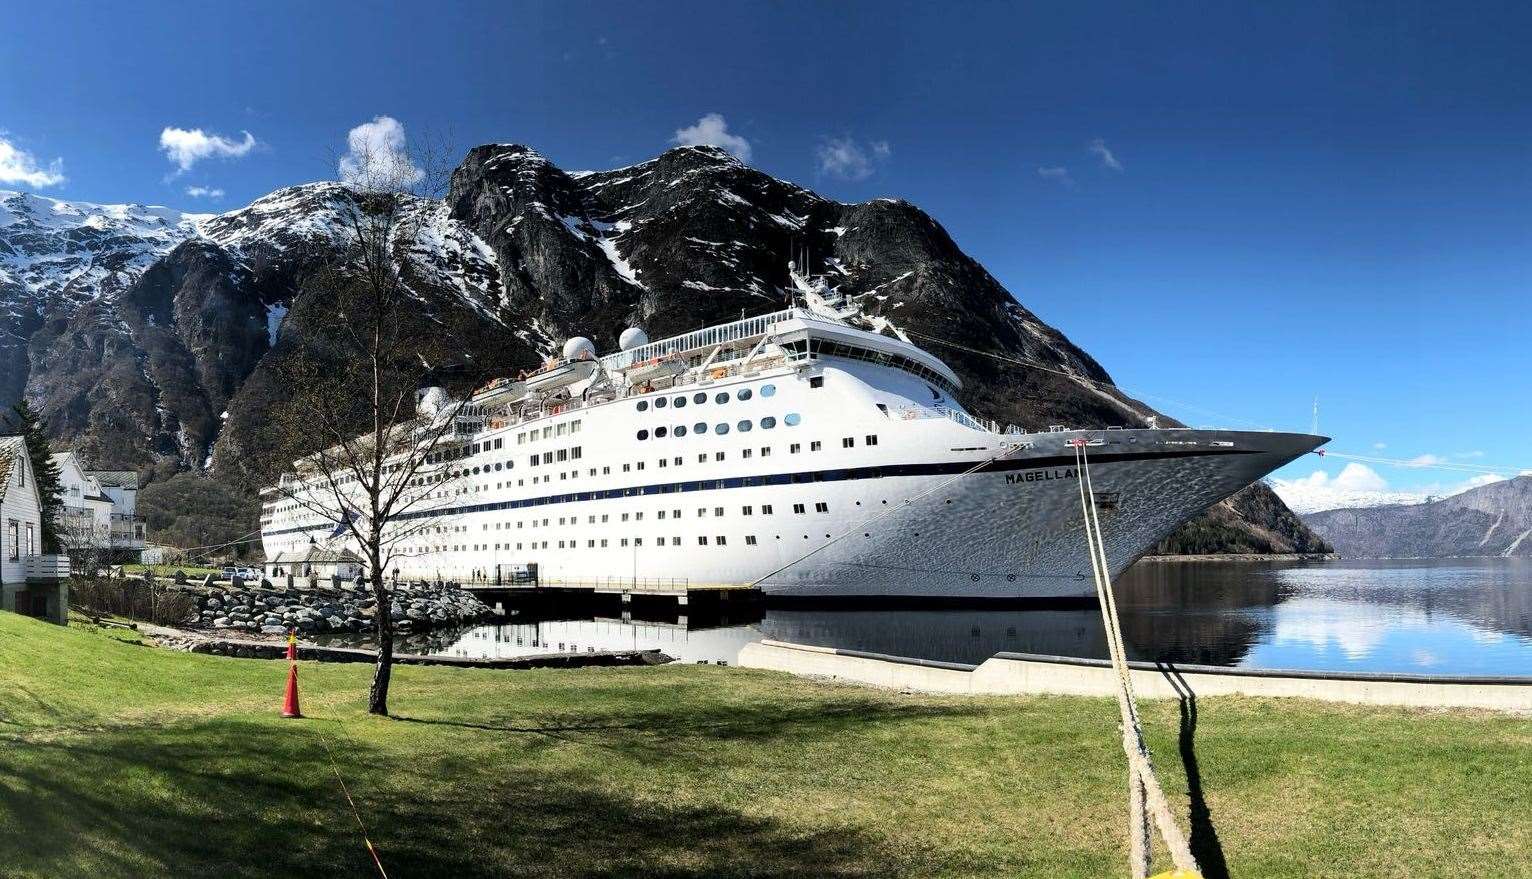 Magellan docked on the Eidfjord